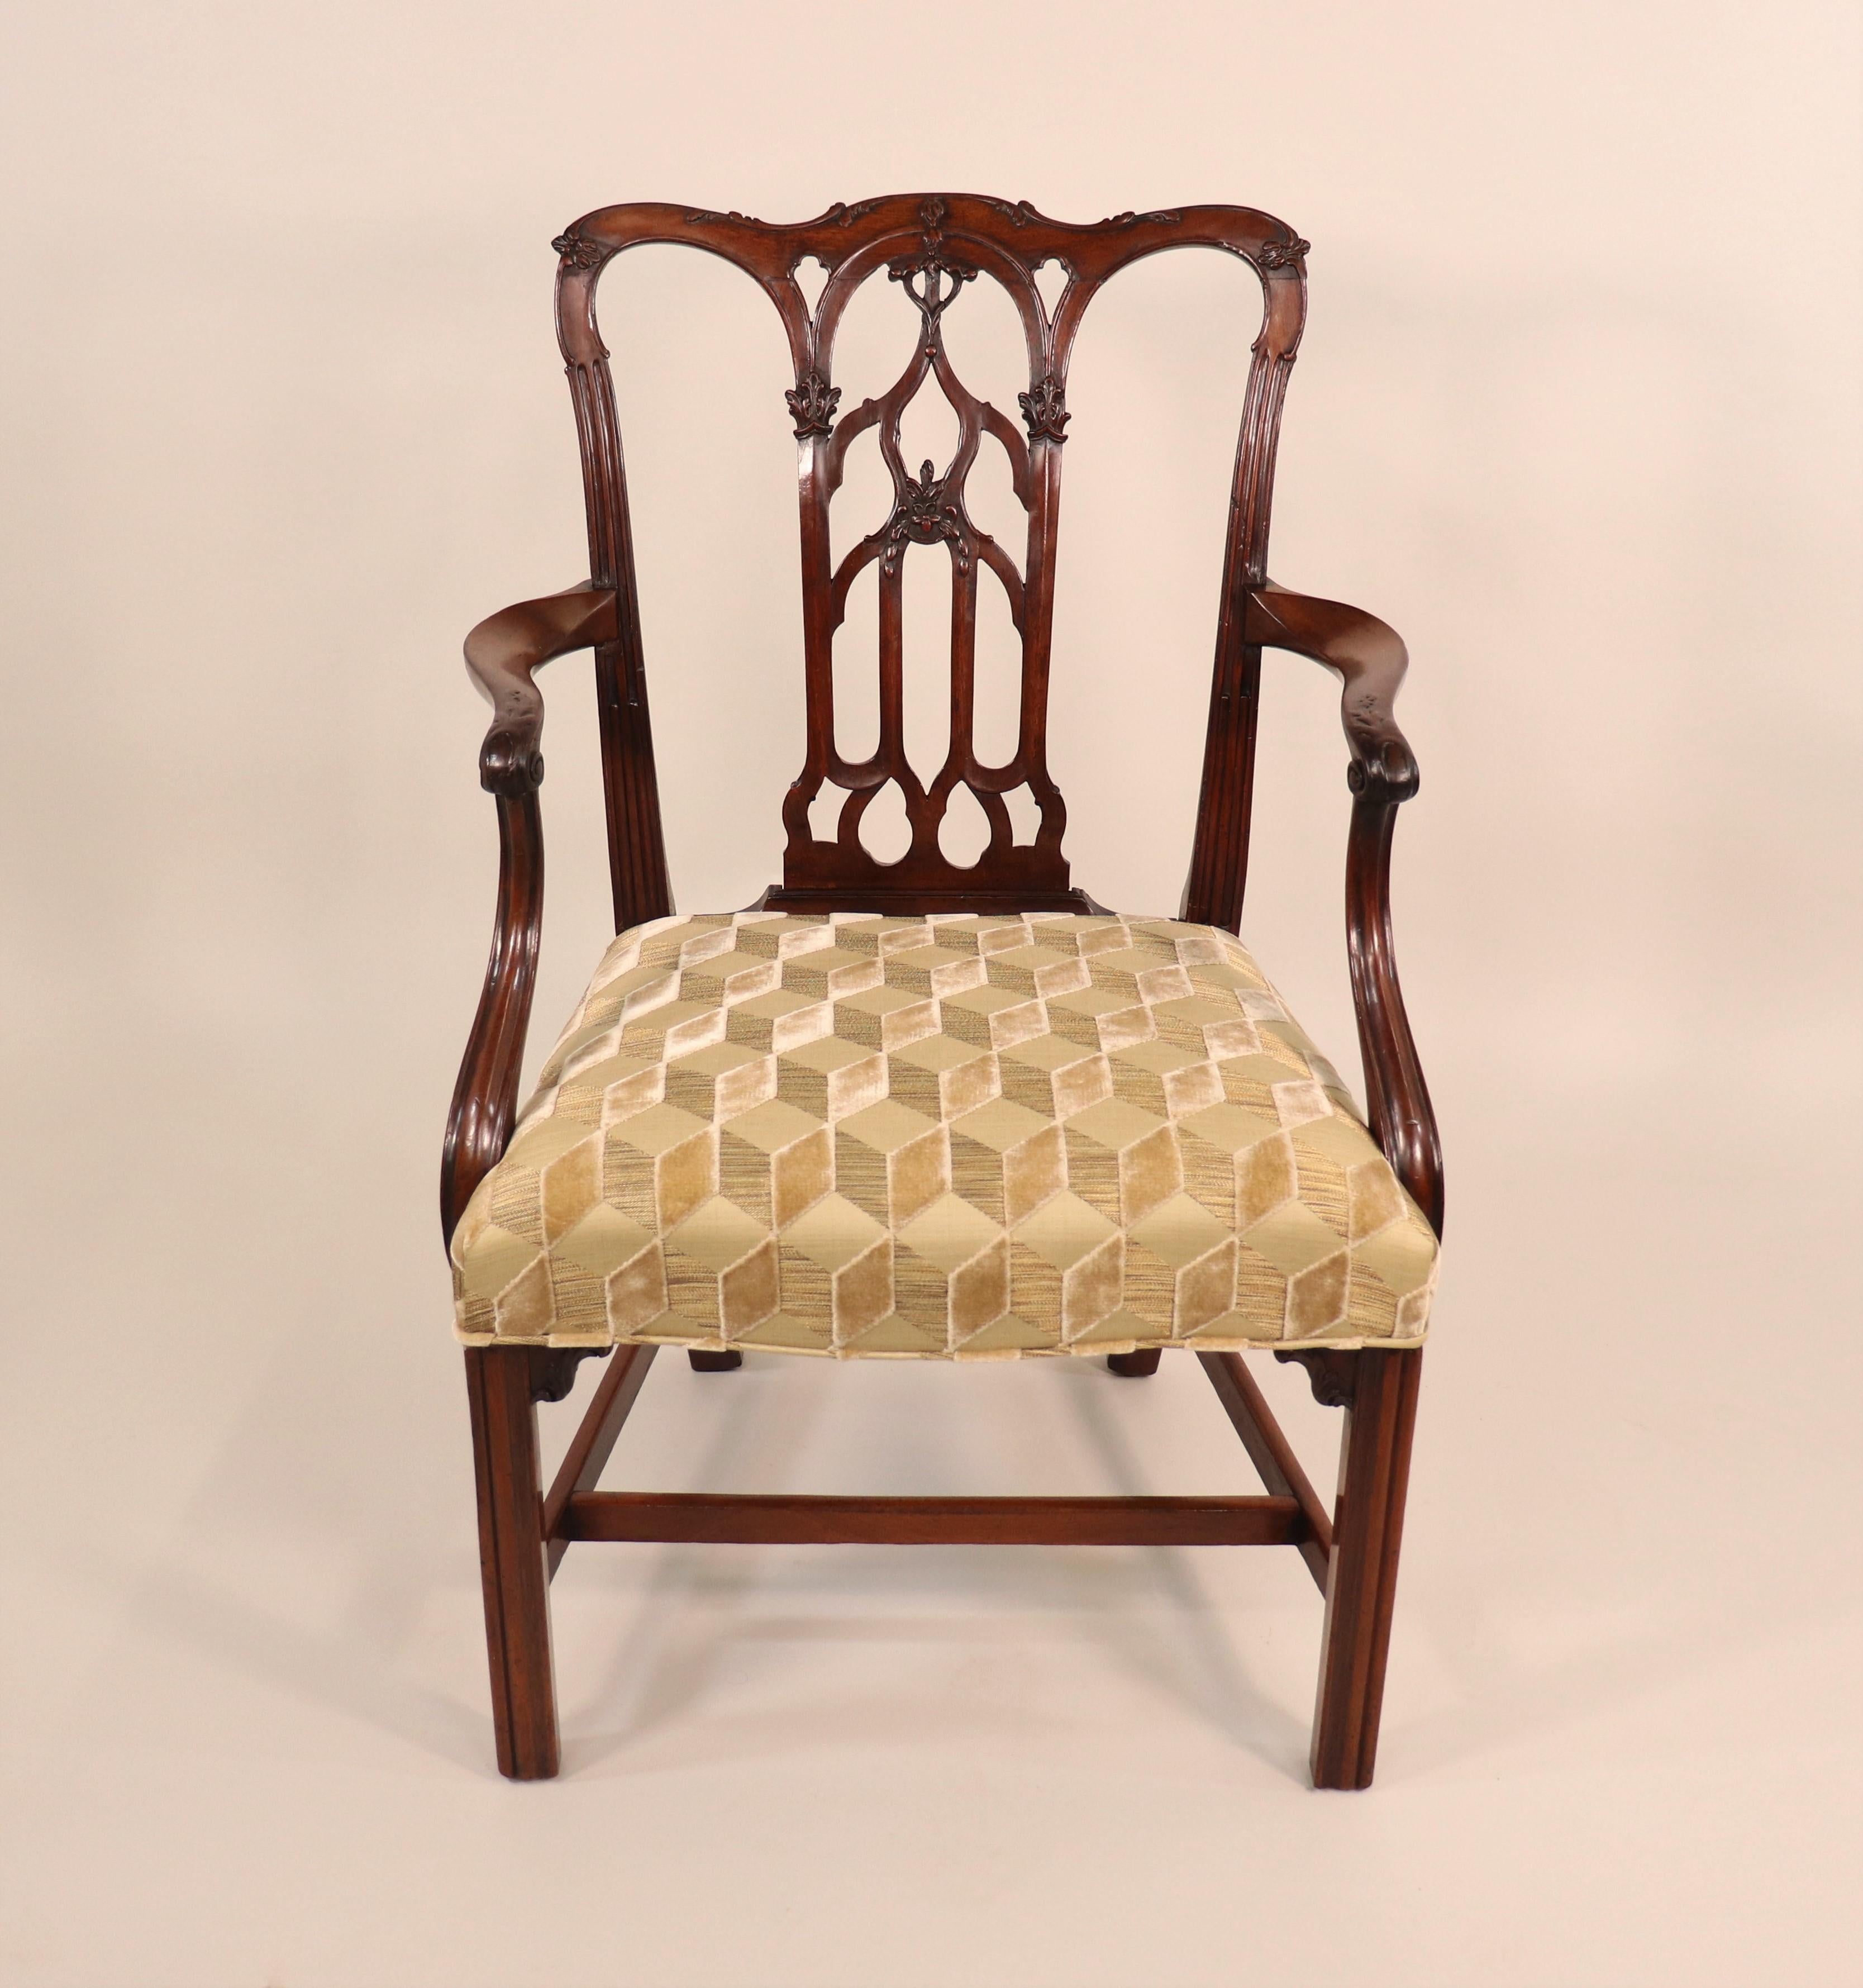 Circa 1750 English Georgian II period mahogany armchair. La période George II est surtout connue pour ses chaises complexes. Comme les autres périodes géorgiennes, celle-ci porte le nom du monarque de l'époque. Sous George II, l'acajou est devenu le